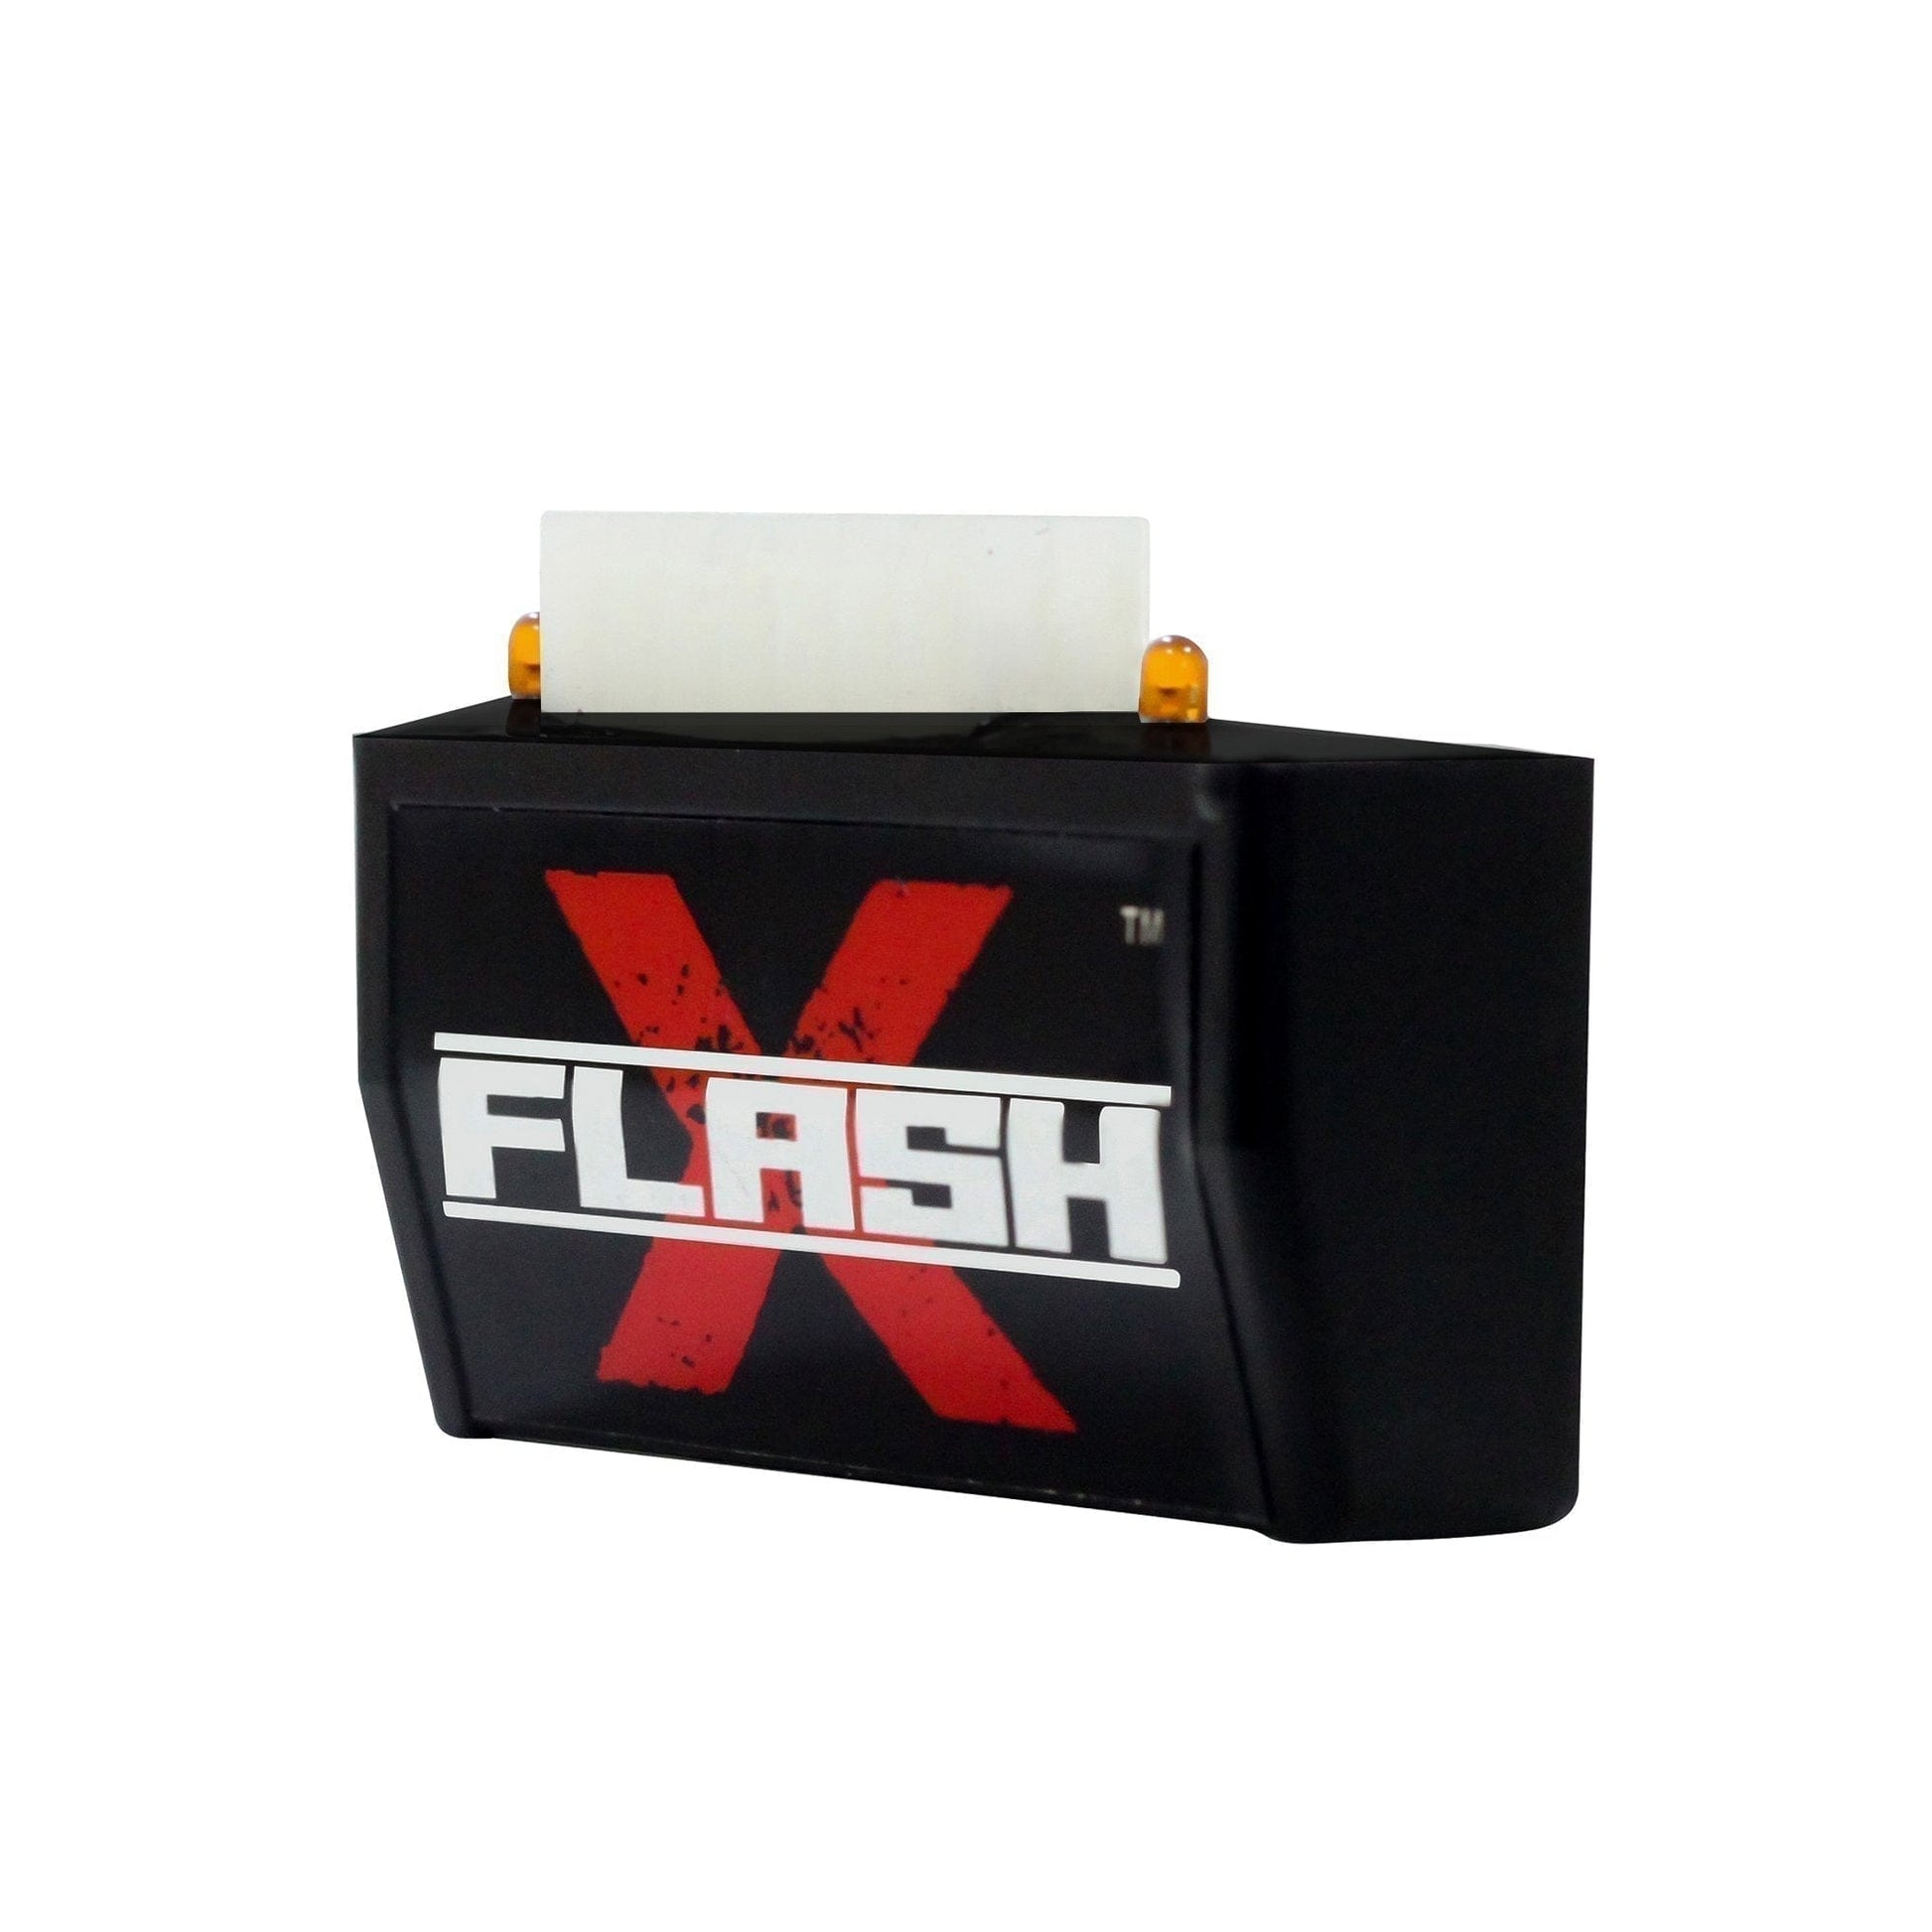 Destination Moto Dominar 250 Flash X Hazard Lights Flash Module, Blinker,Flasher